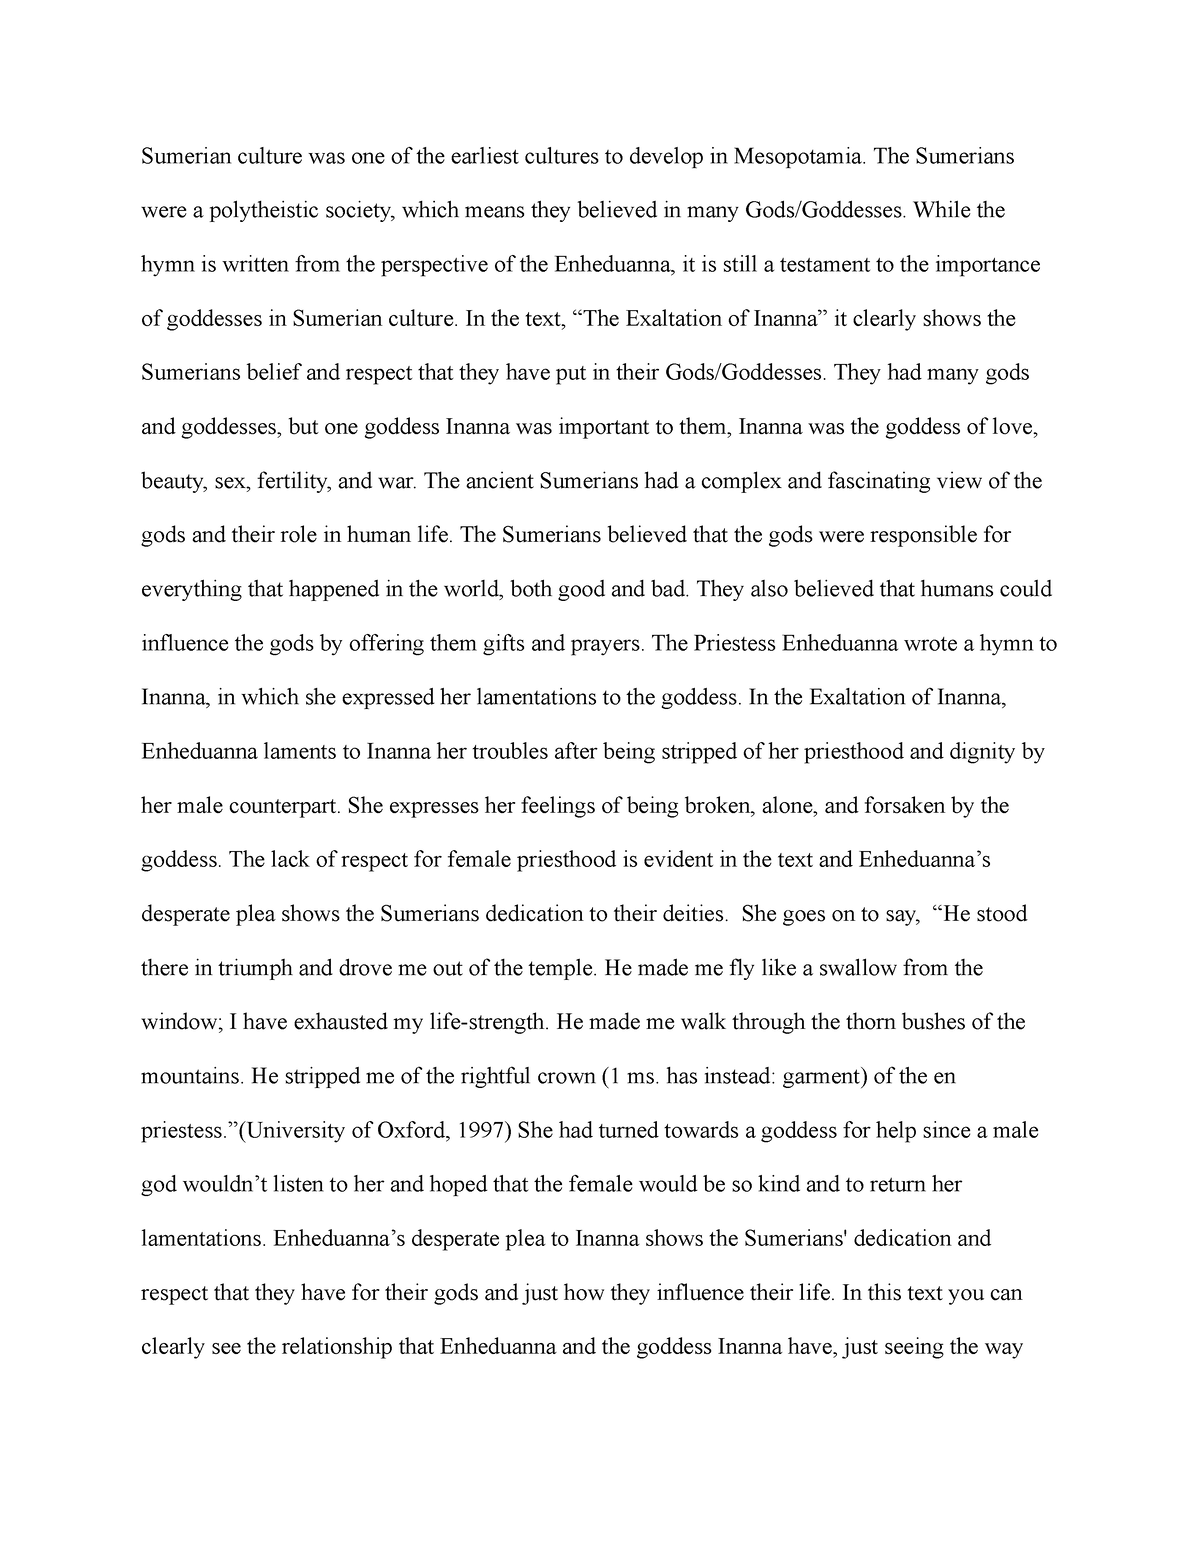 write an essay on mesopotamia